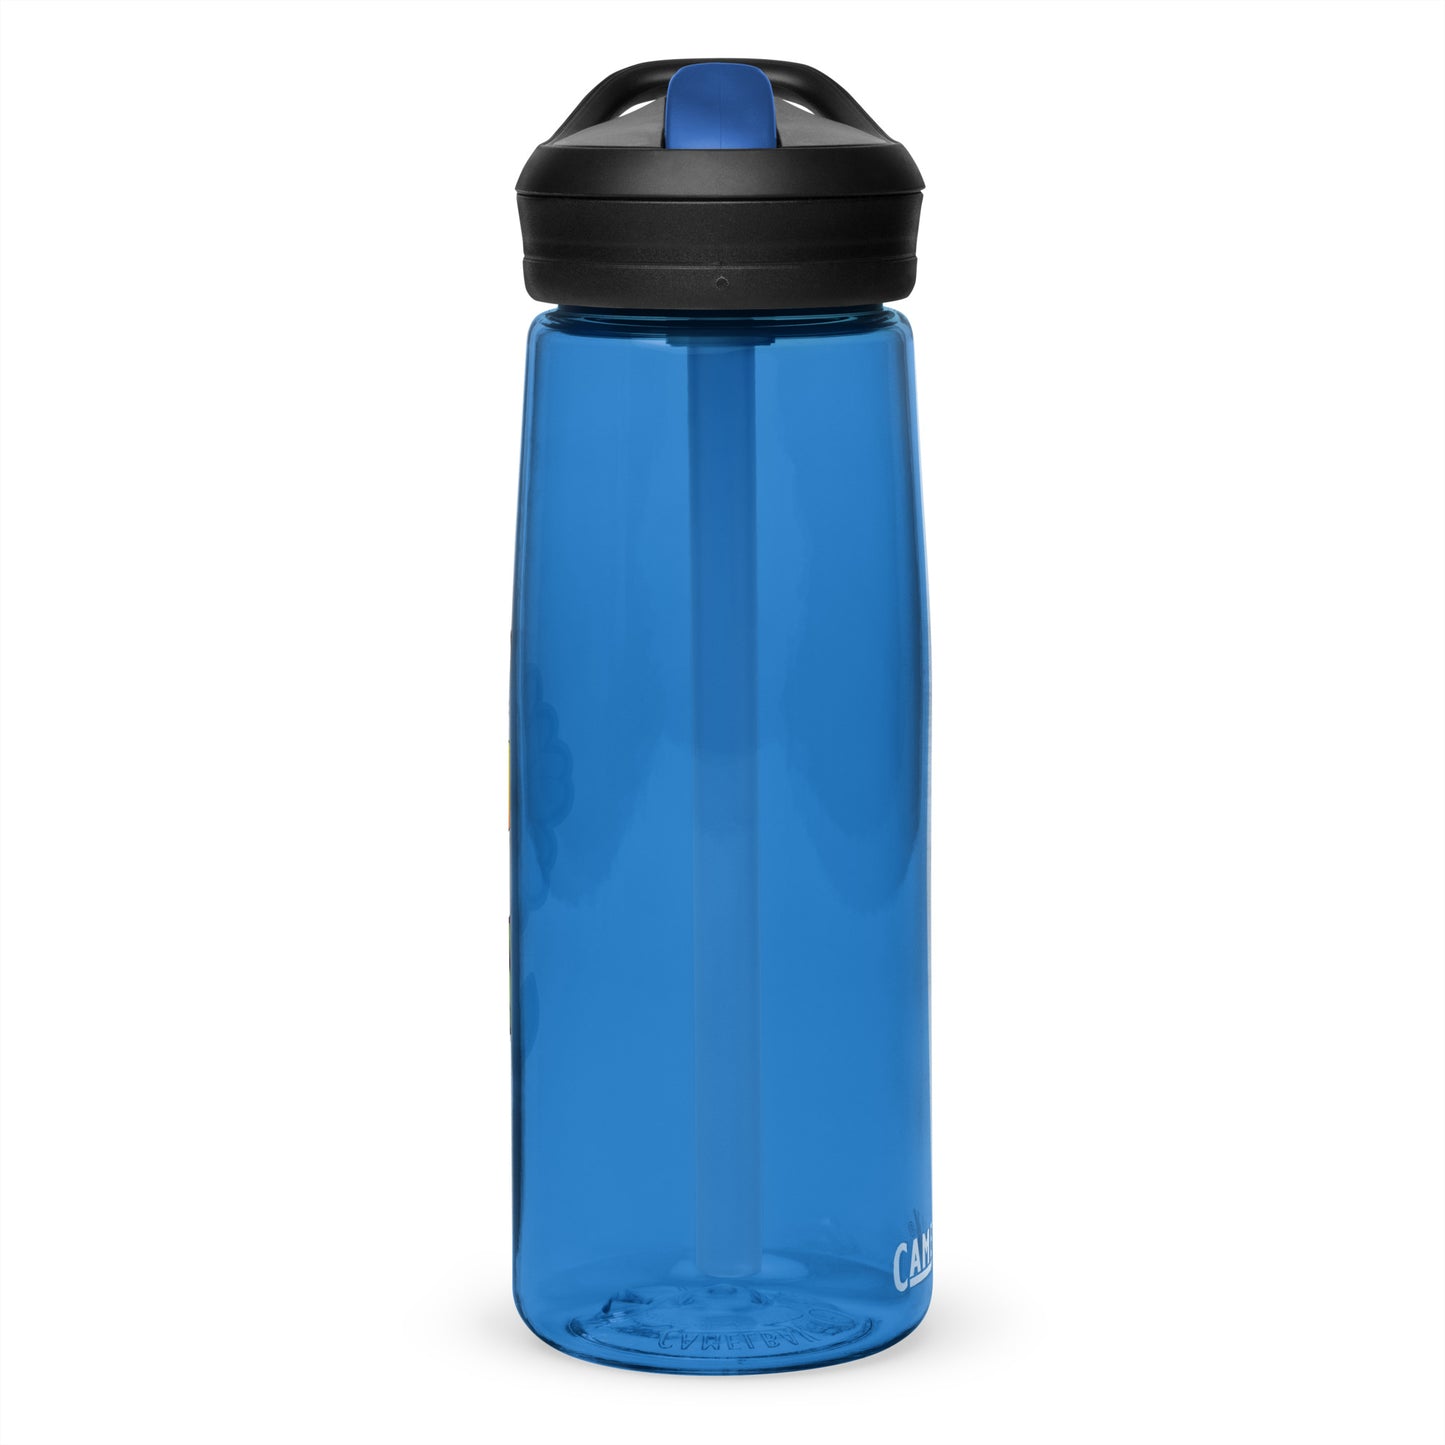 Daisy 25oz Sports water bottle